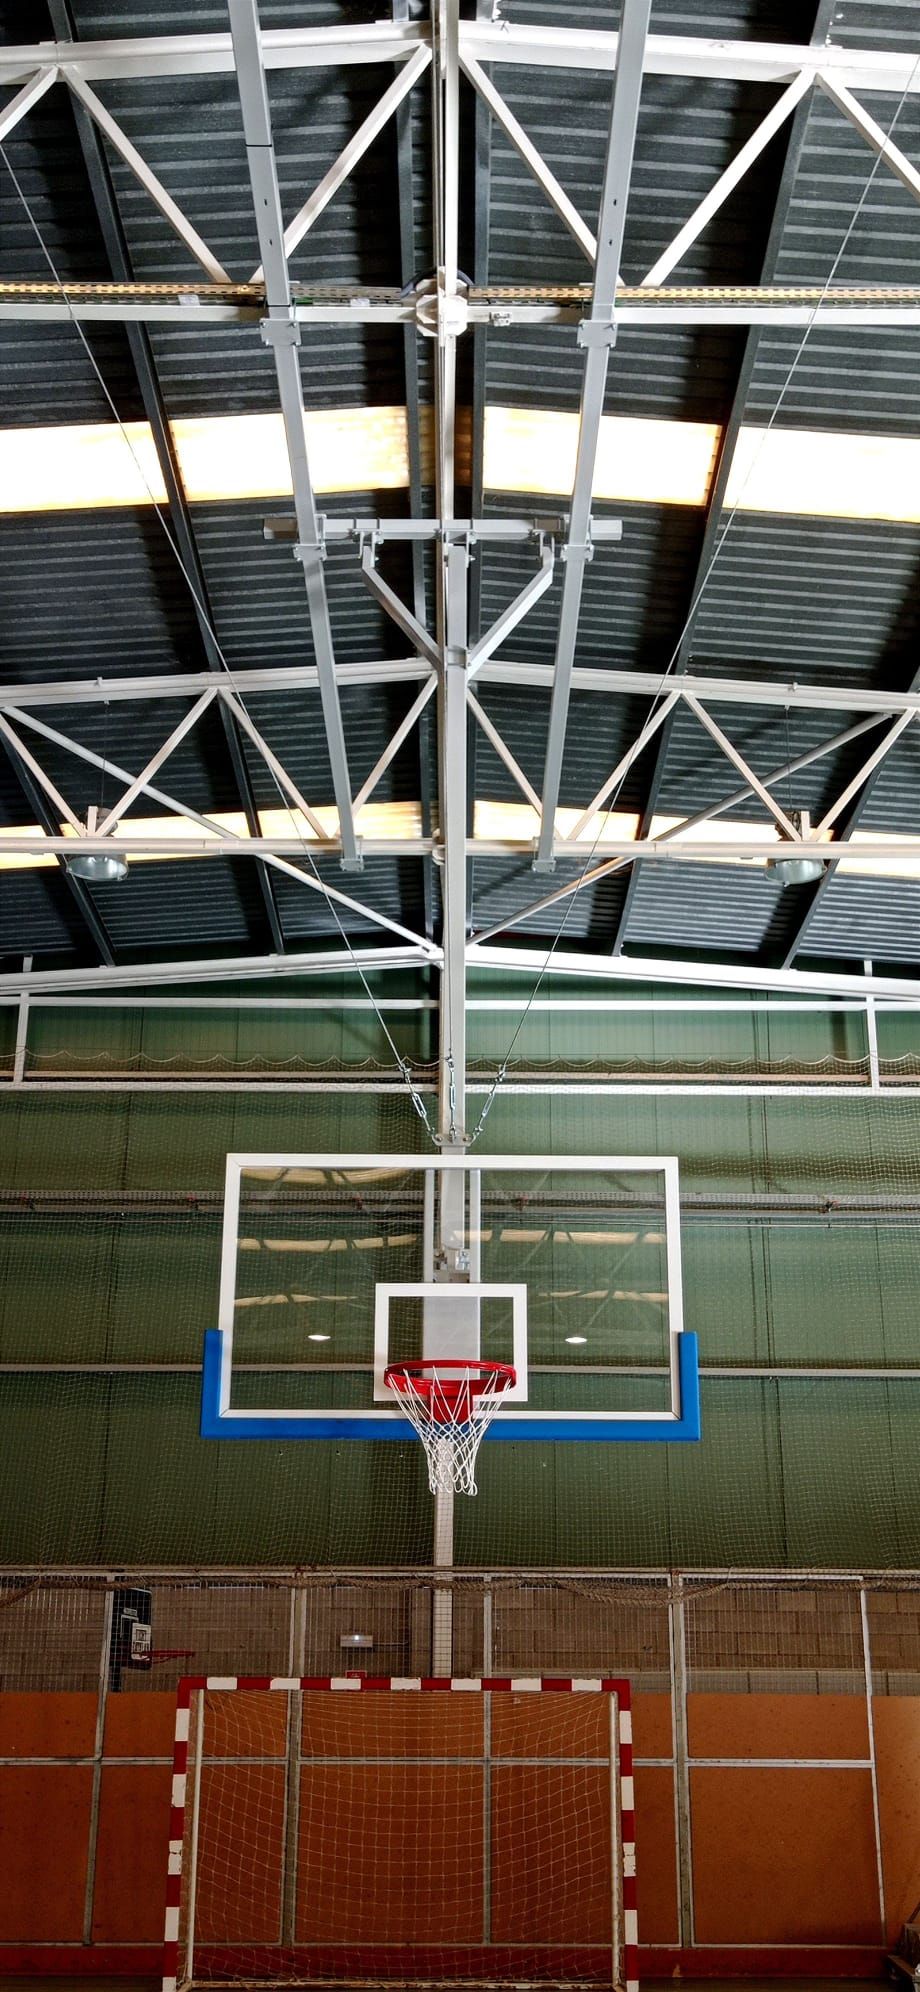 Canasta baloncesto de techo monotubo